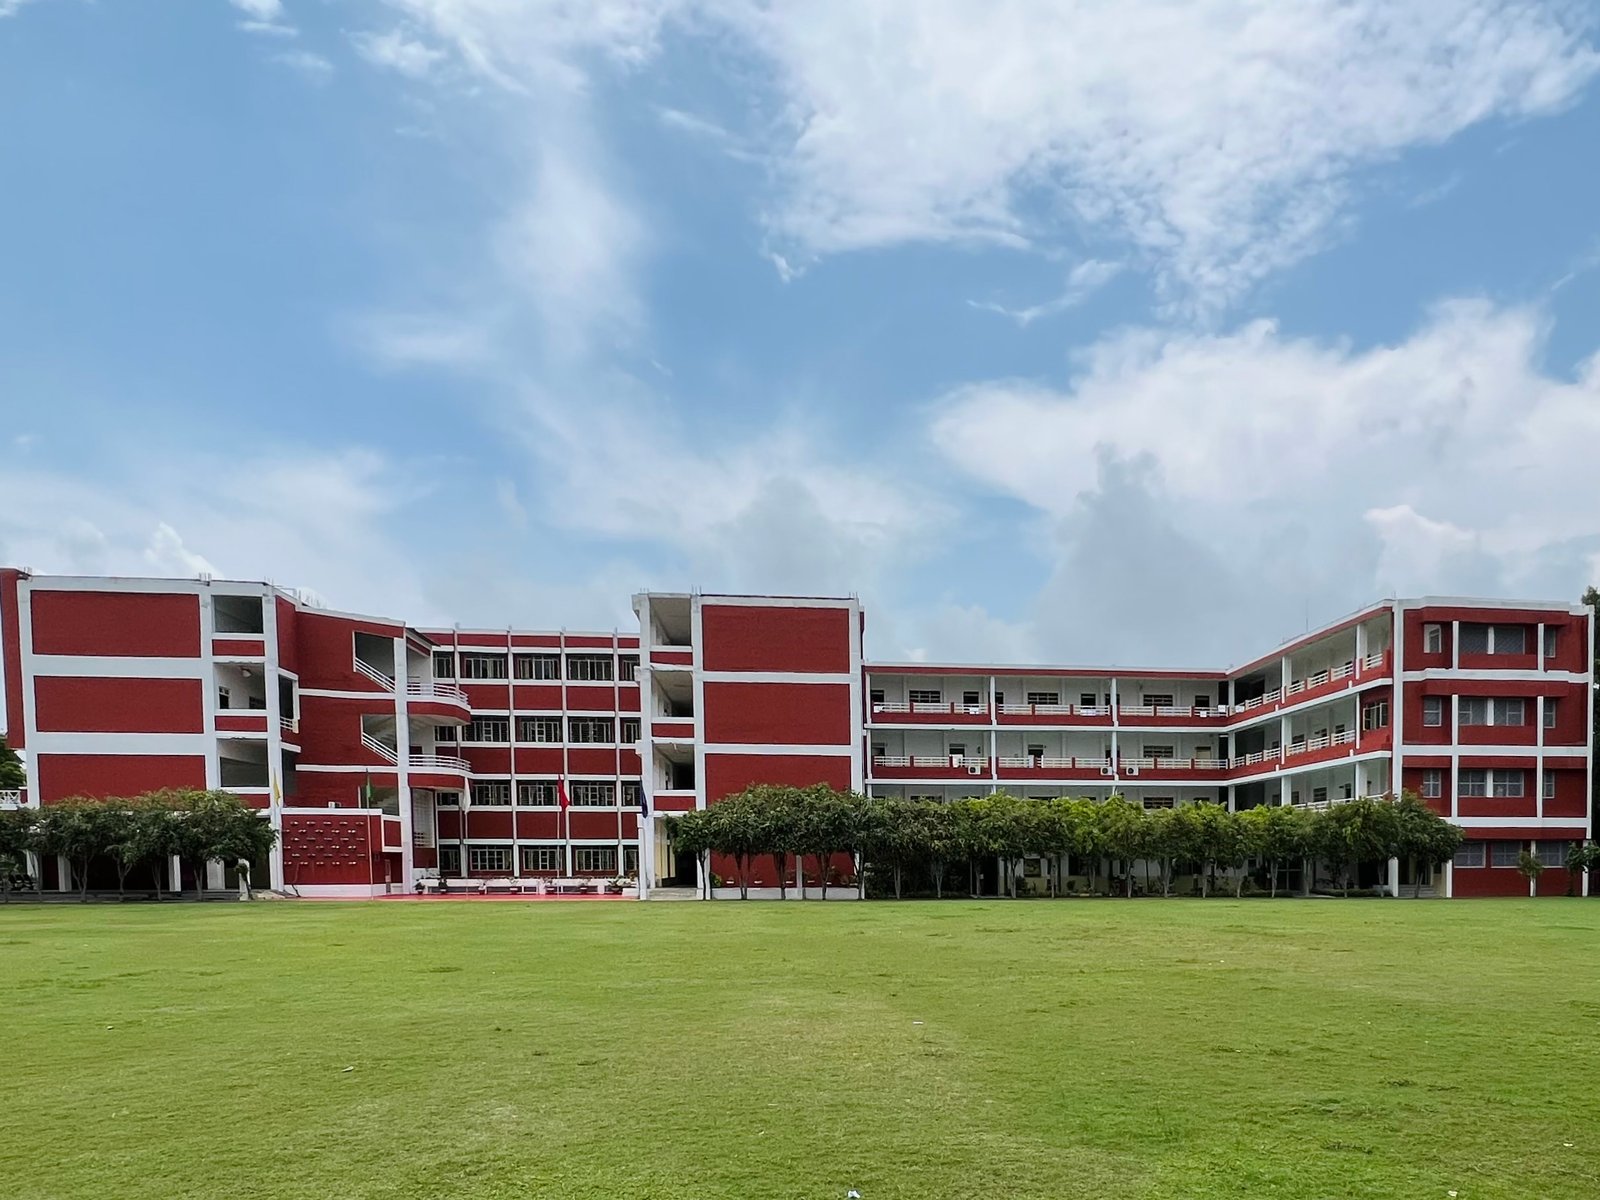 The Lucknow Public Collegiate